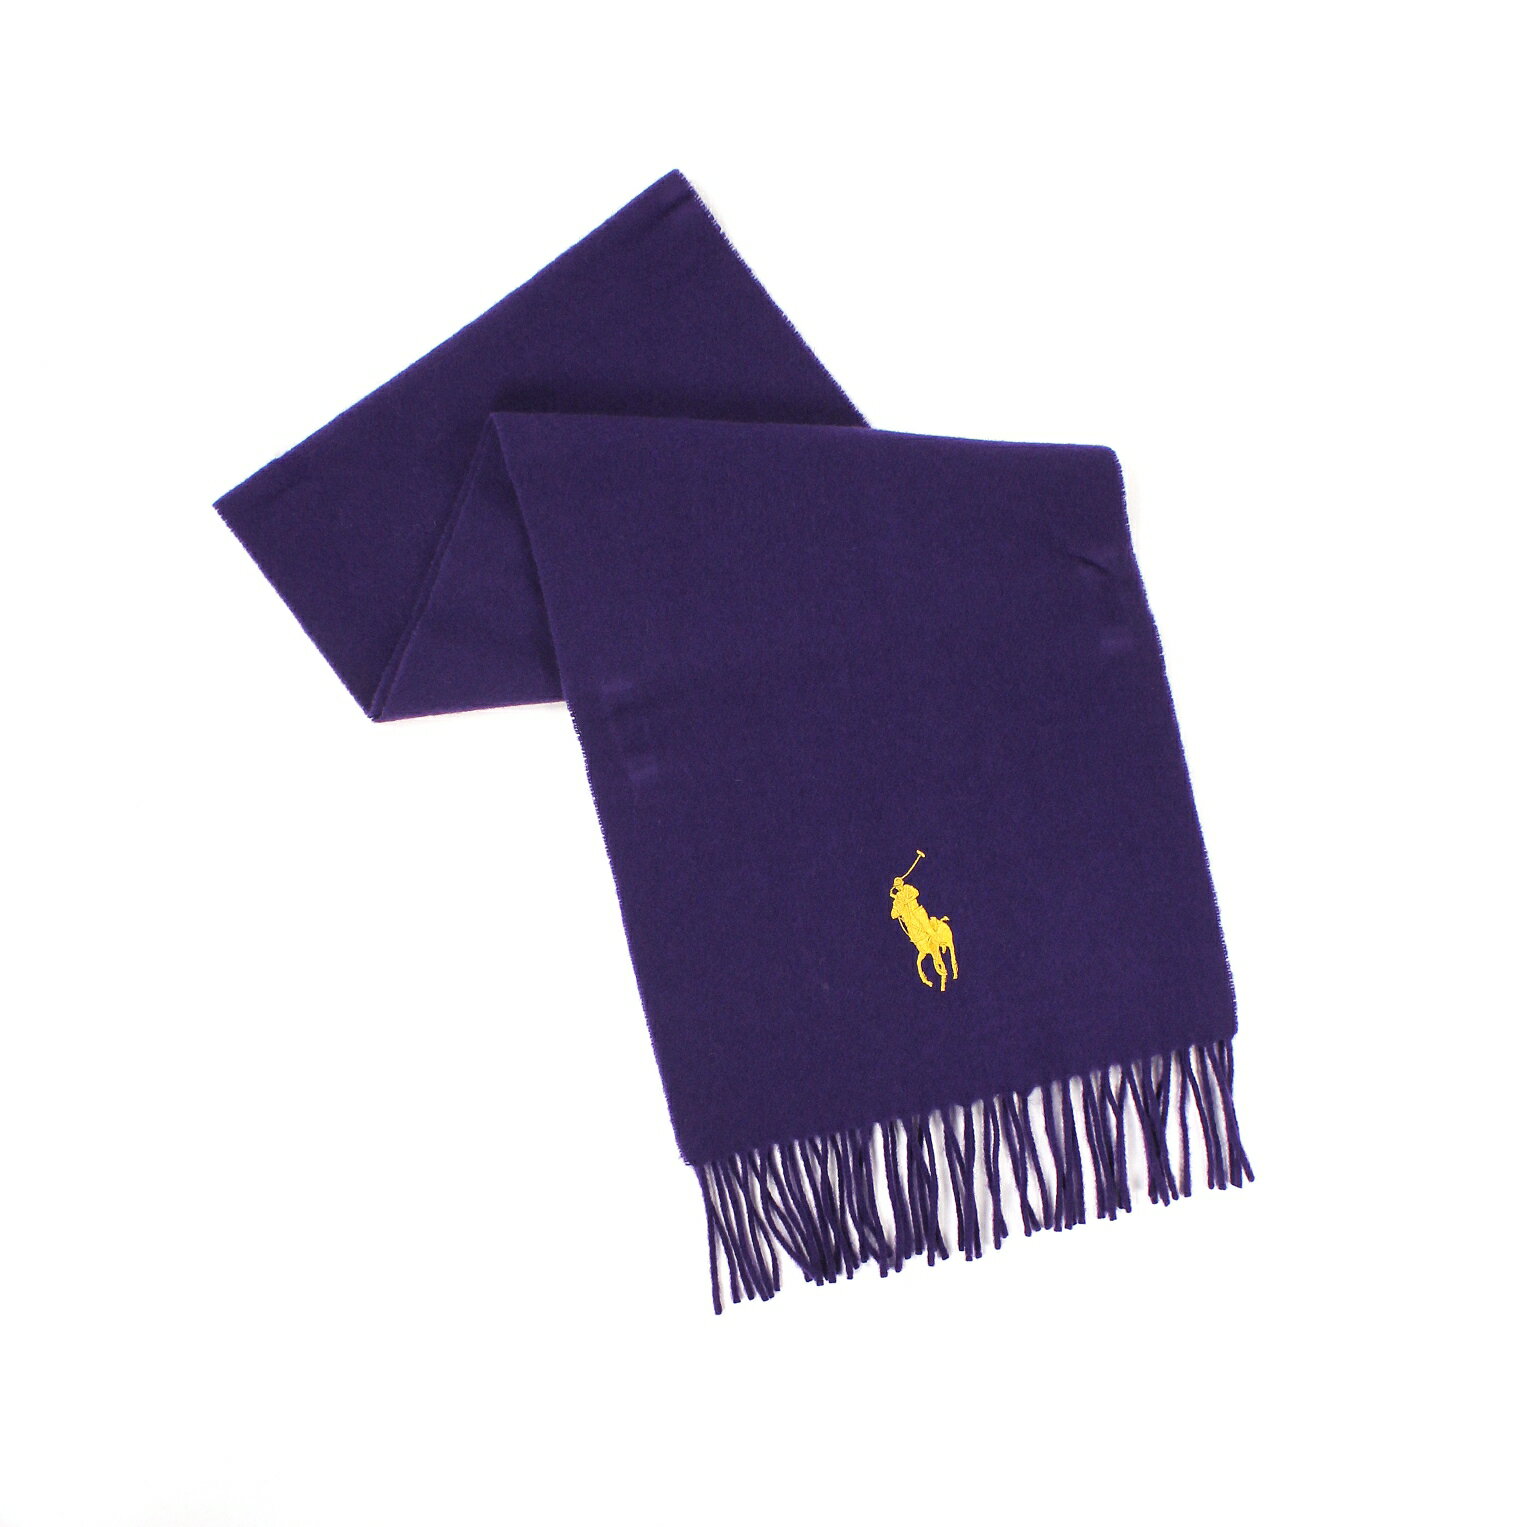 美國百分百【全新真品】Ralph Lauren 圍巾 RL 配件 披肩 Polo 大馬 紫色 金馬 雙面 羊毛 義大利 B033